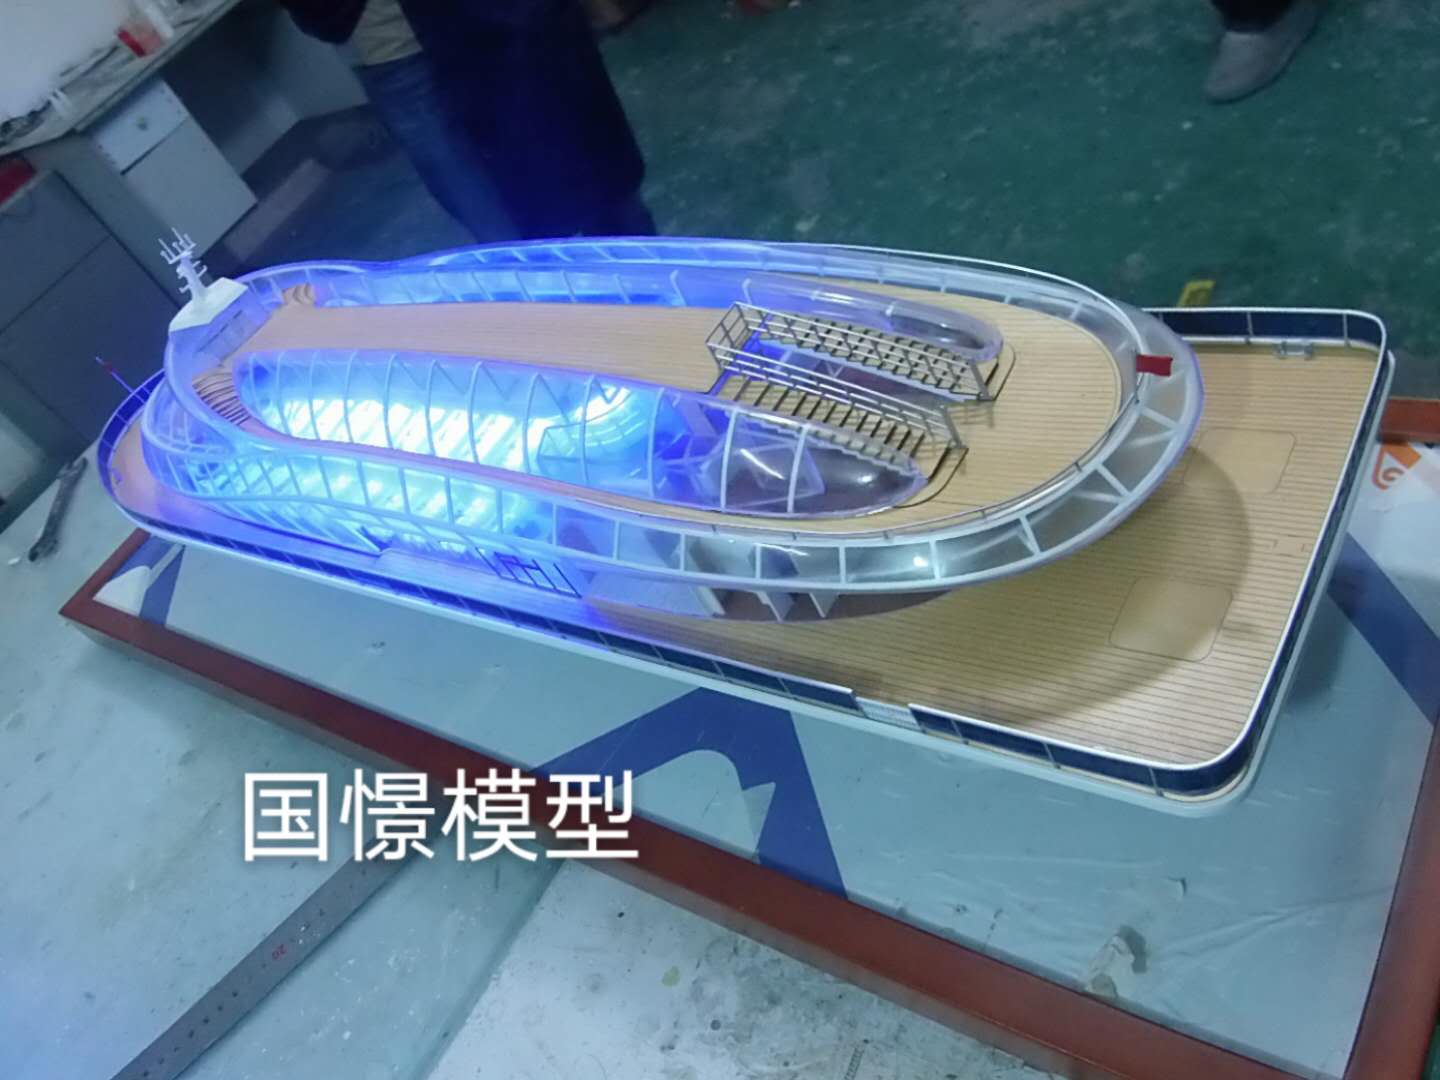 宣汉县船舶模型